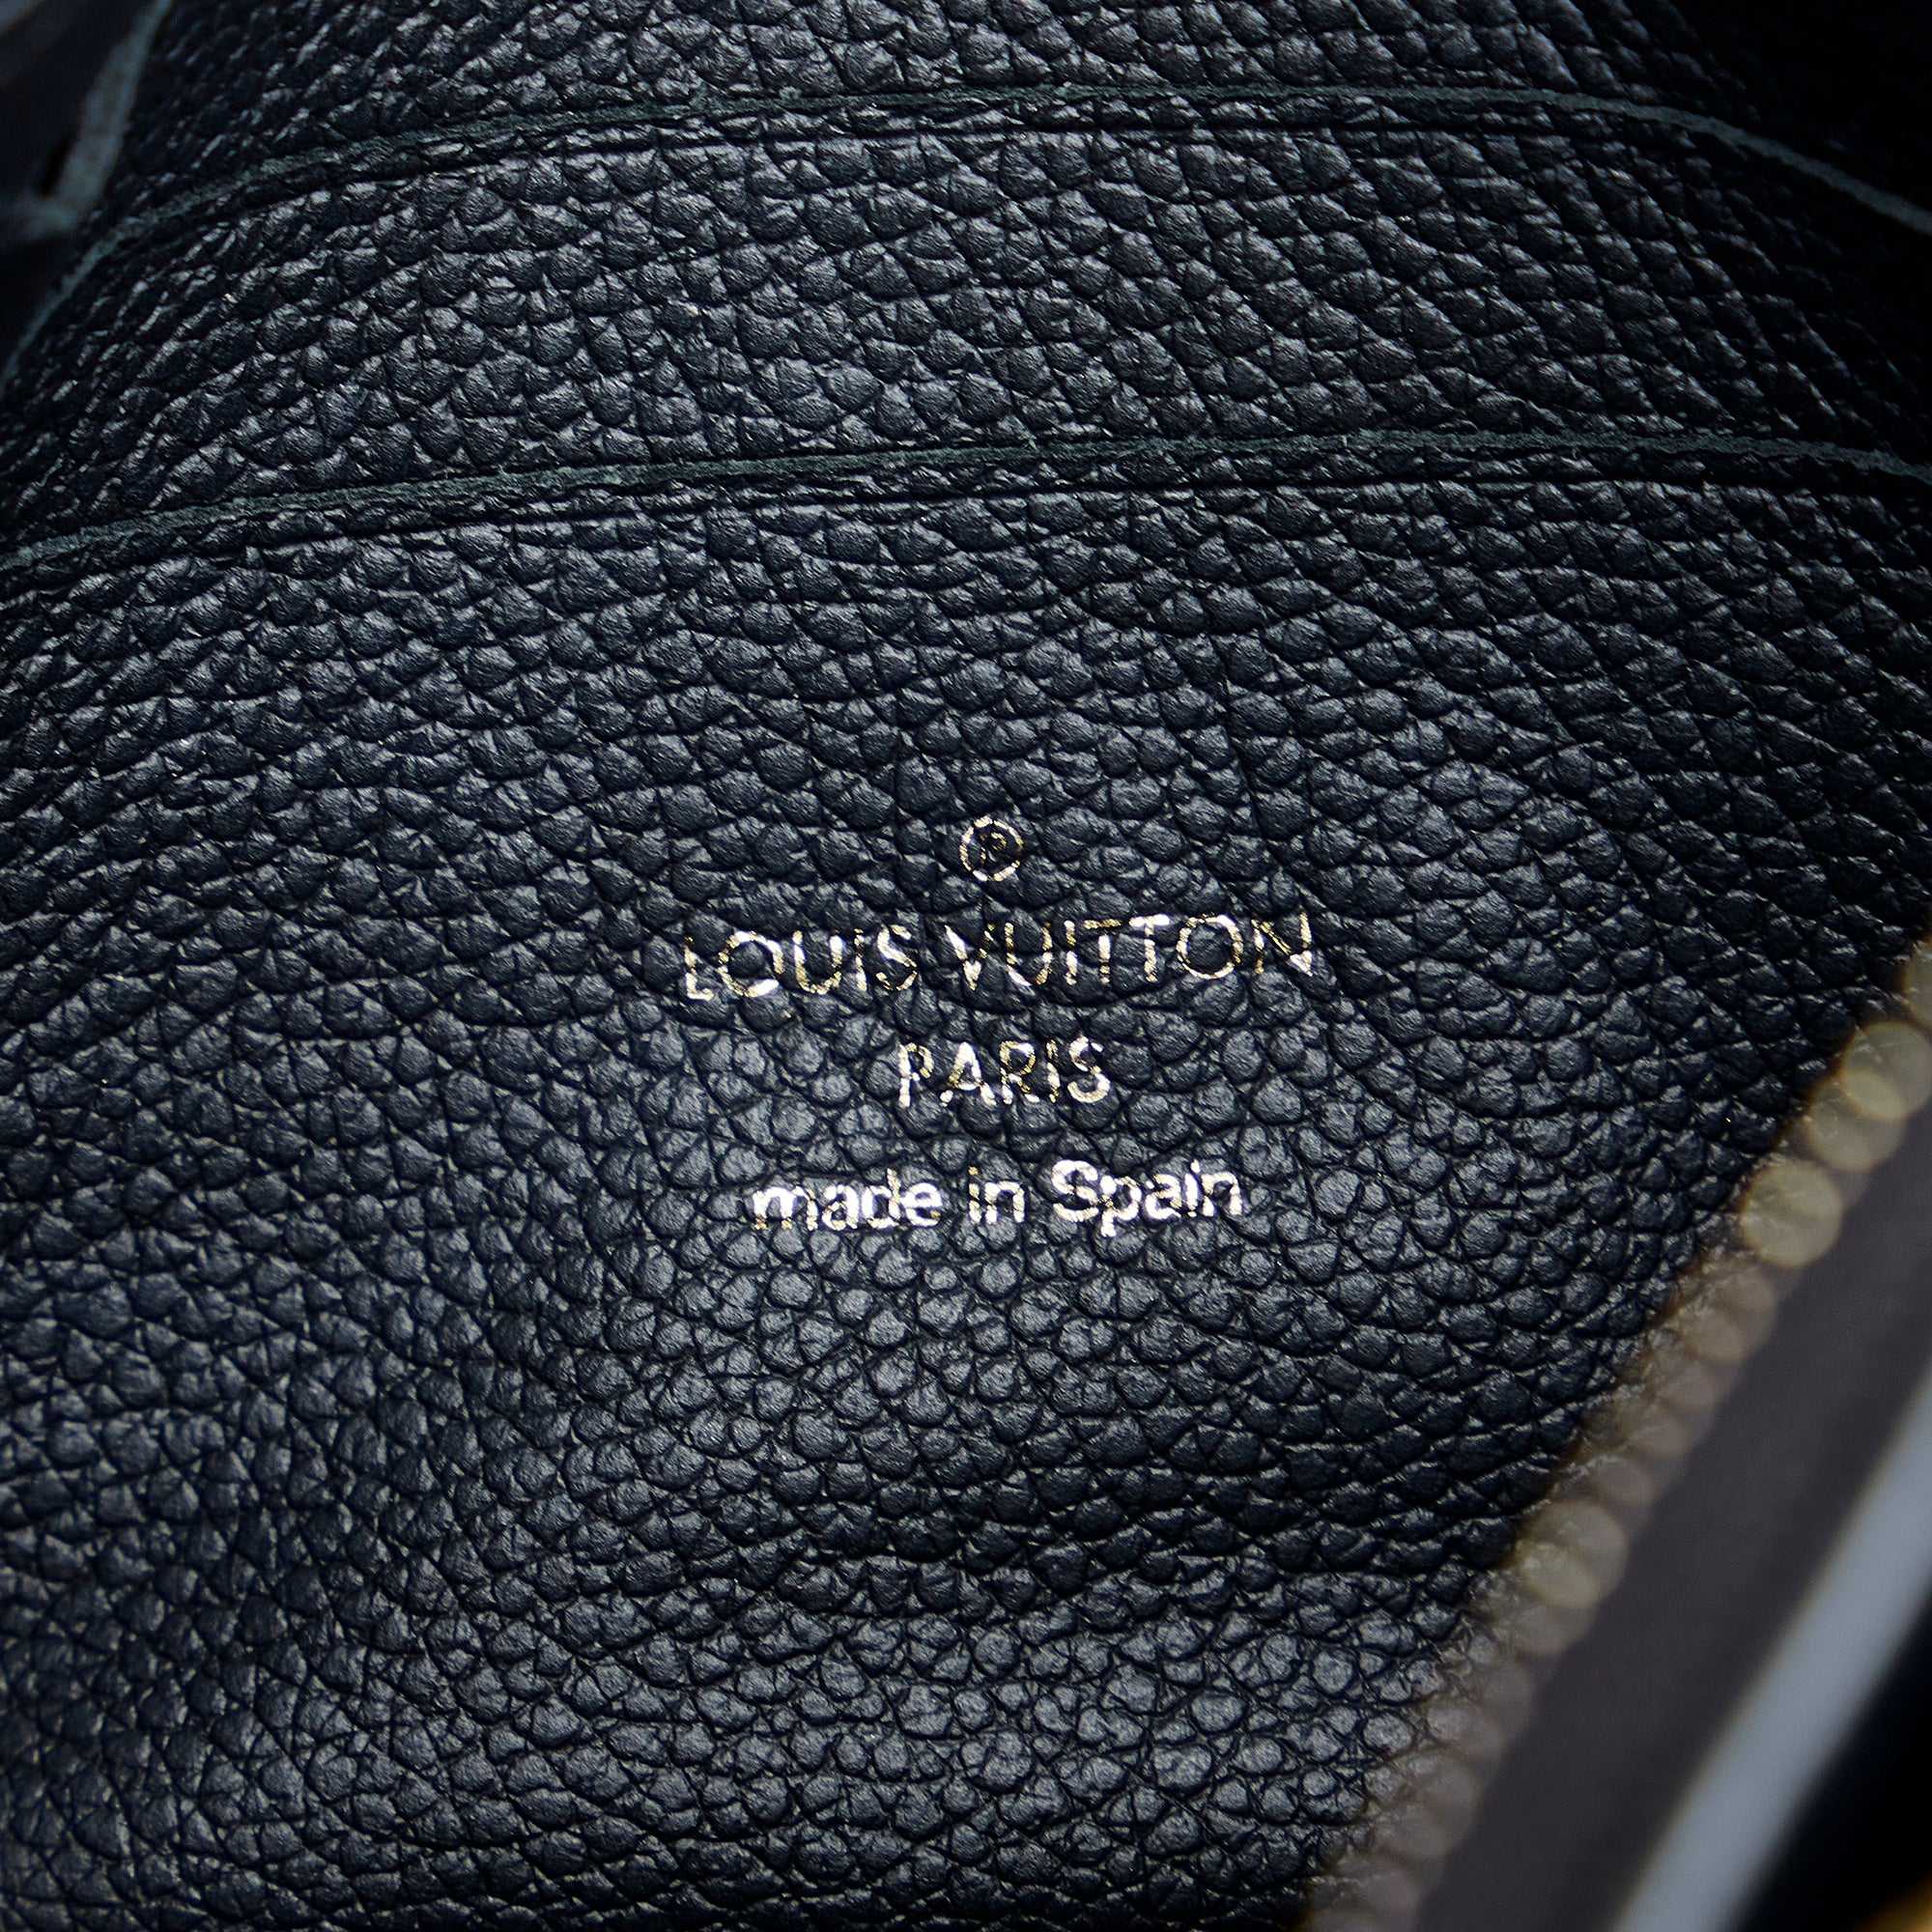 Louis Vuitton Beige Monogram Empreinte and Python Double Zip Pochette Gold Hardware, 2019 (Very Good), Womens Handbag